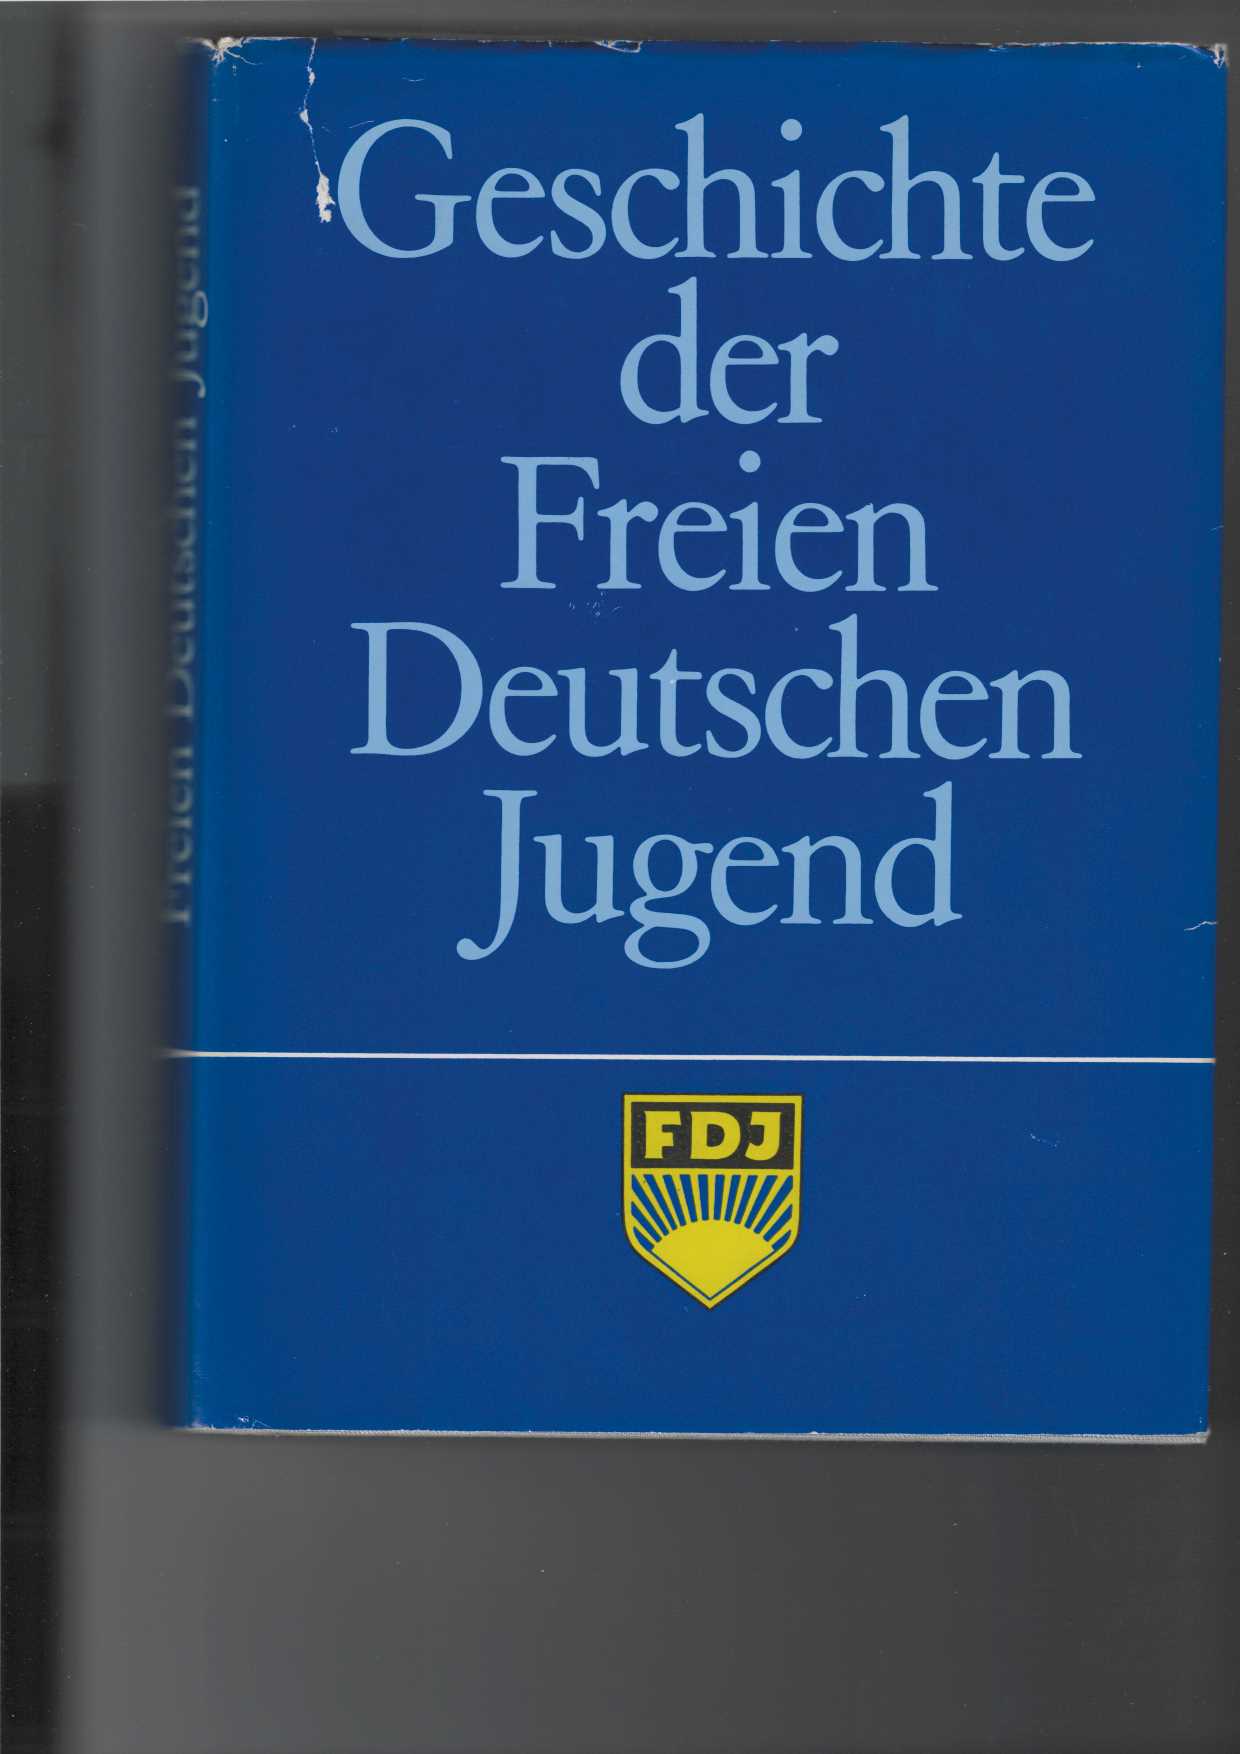 Geschichte der Freien Deutschen Jugend (FDJ).